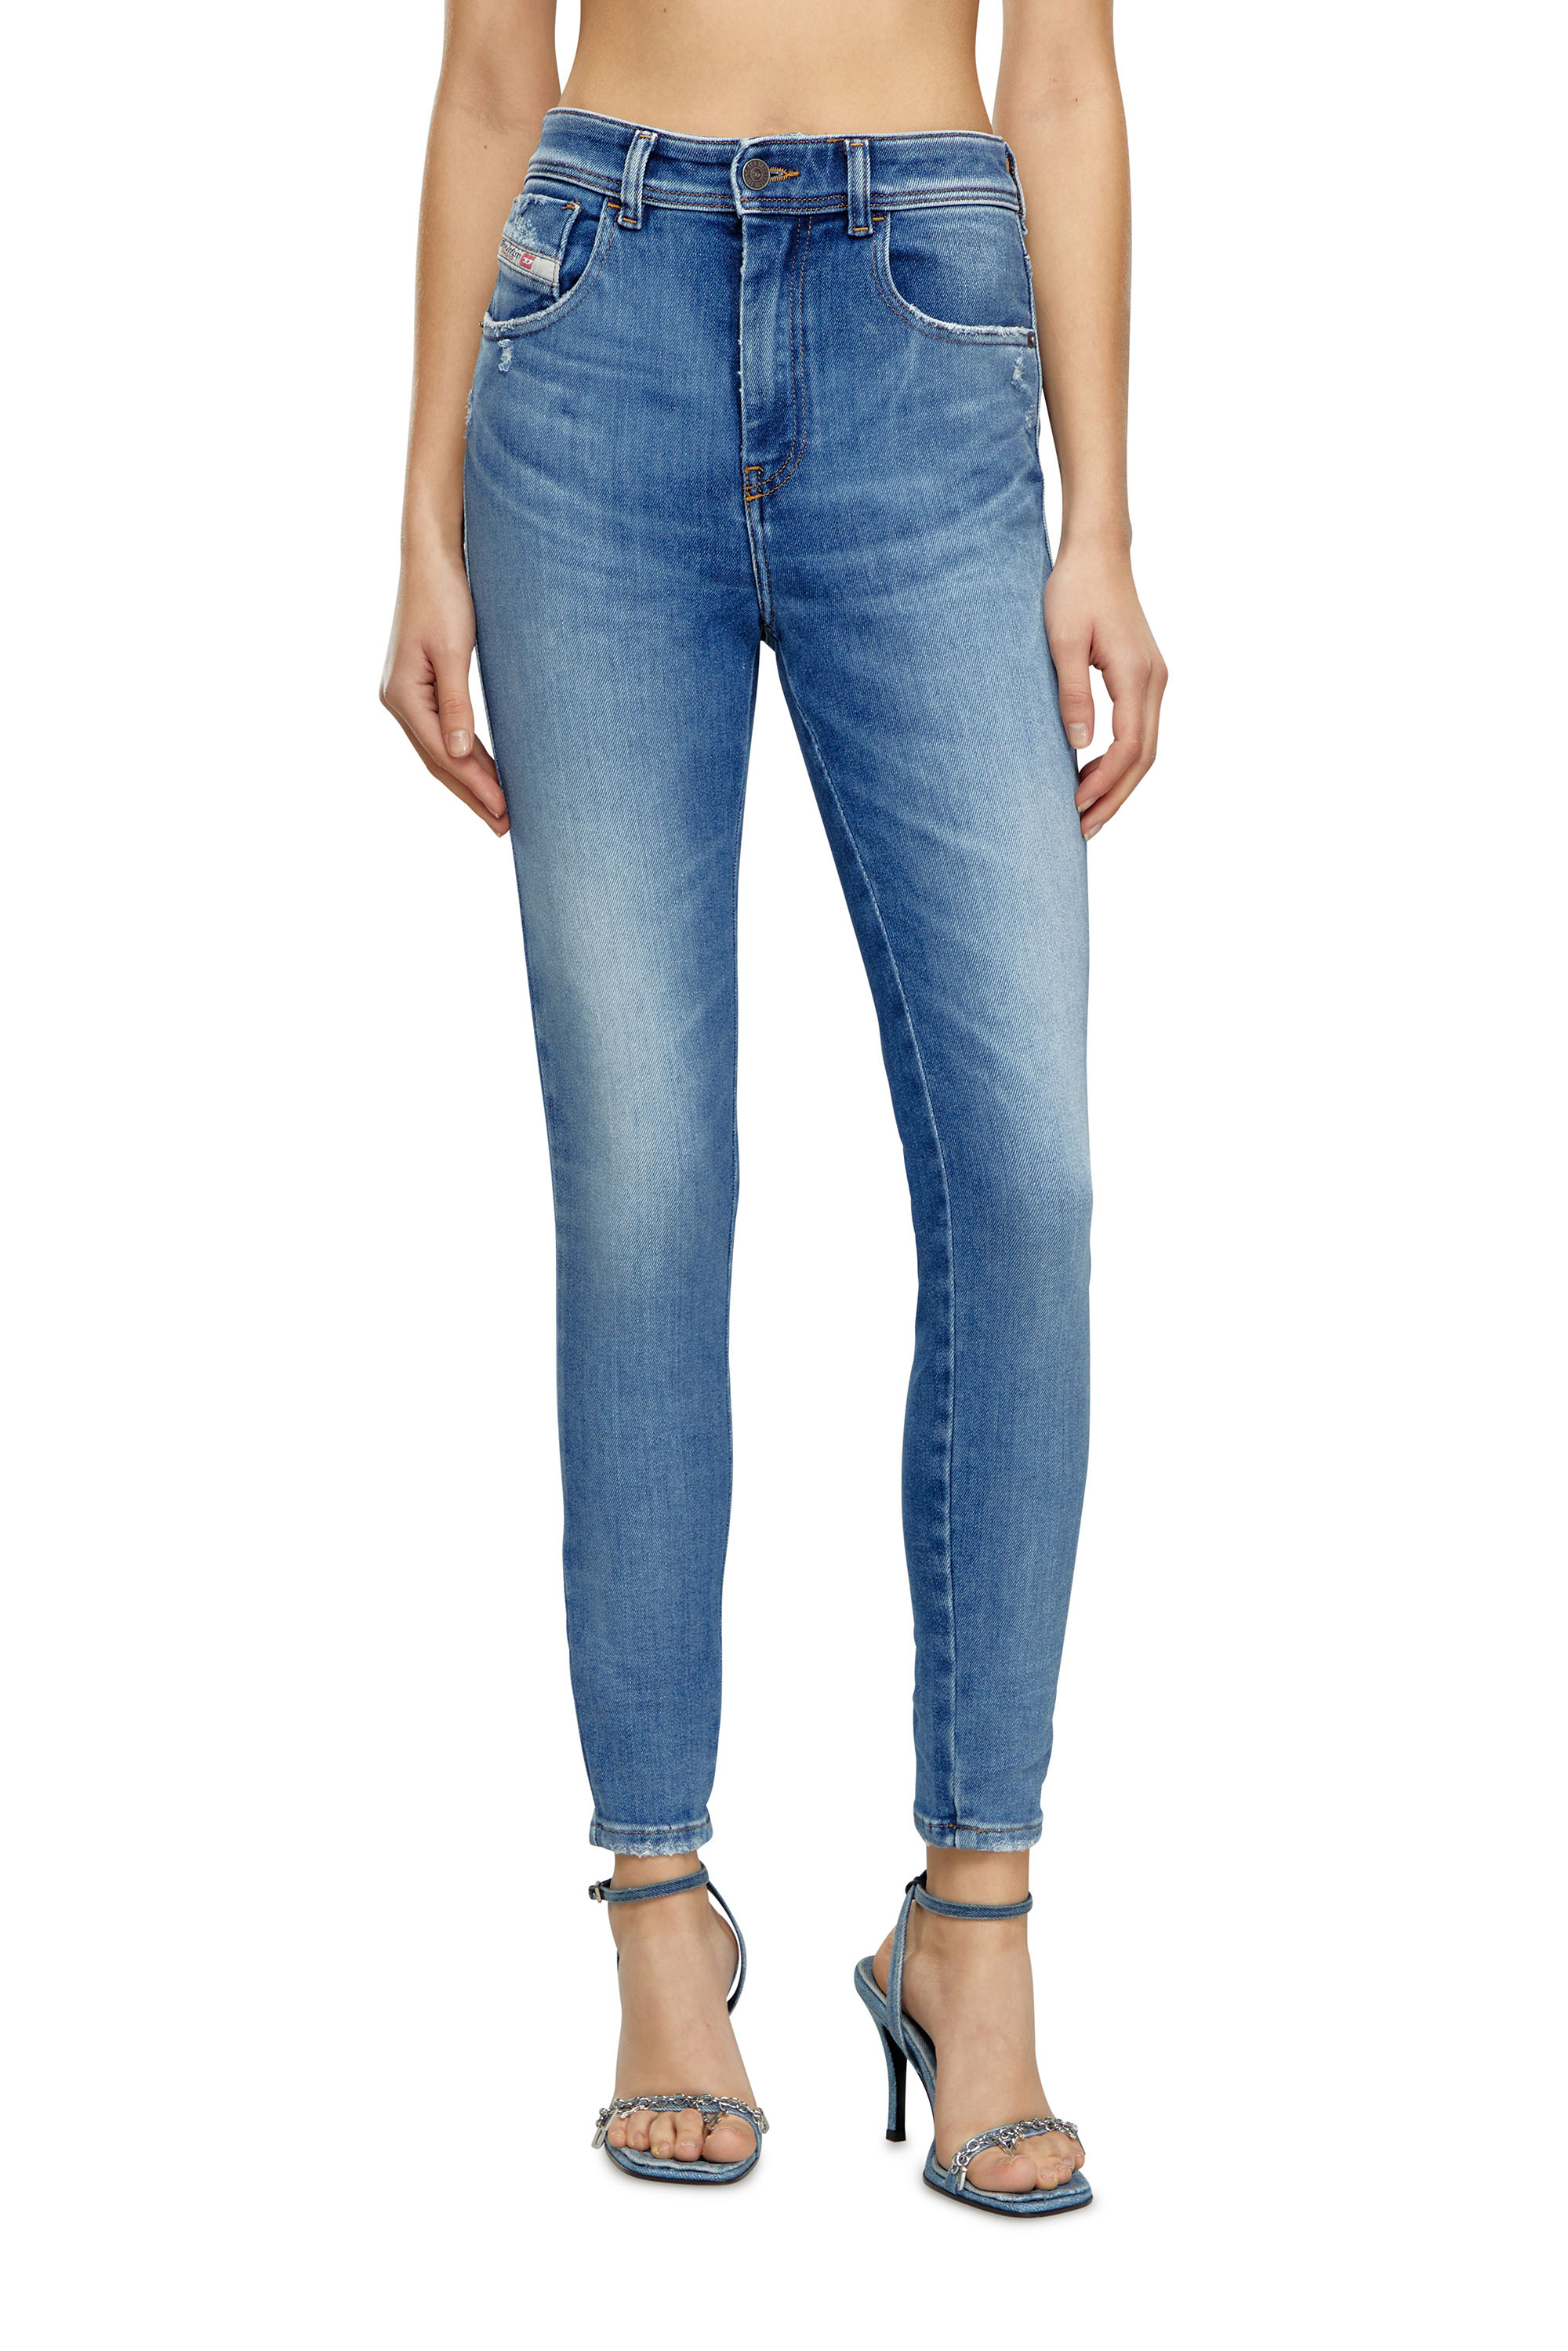 Slandy Women's Jeans: Super Skinny Jeans with Zip | Diesel®